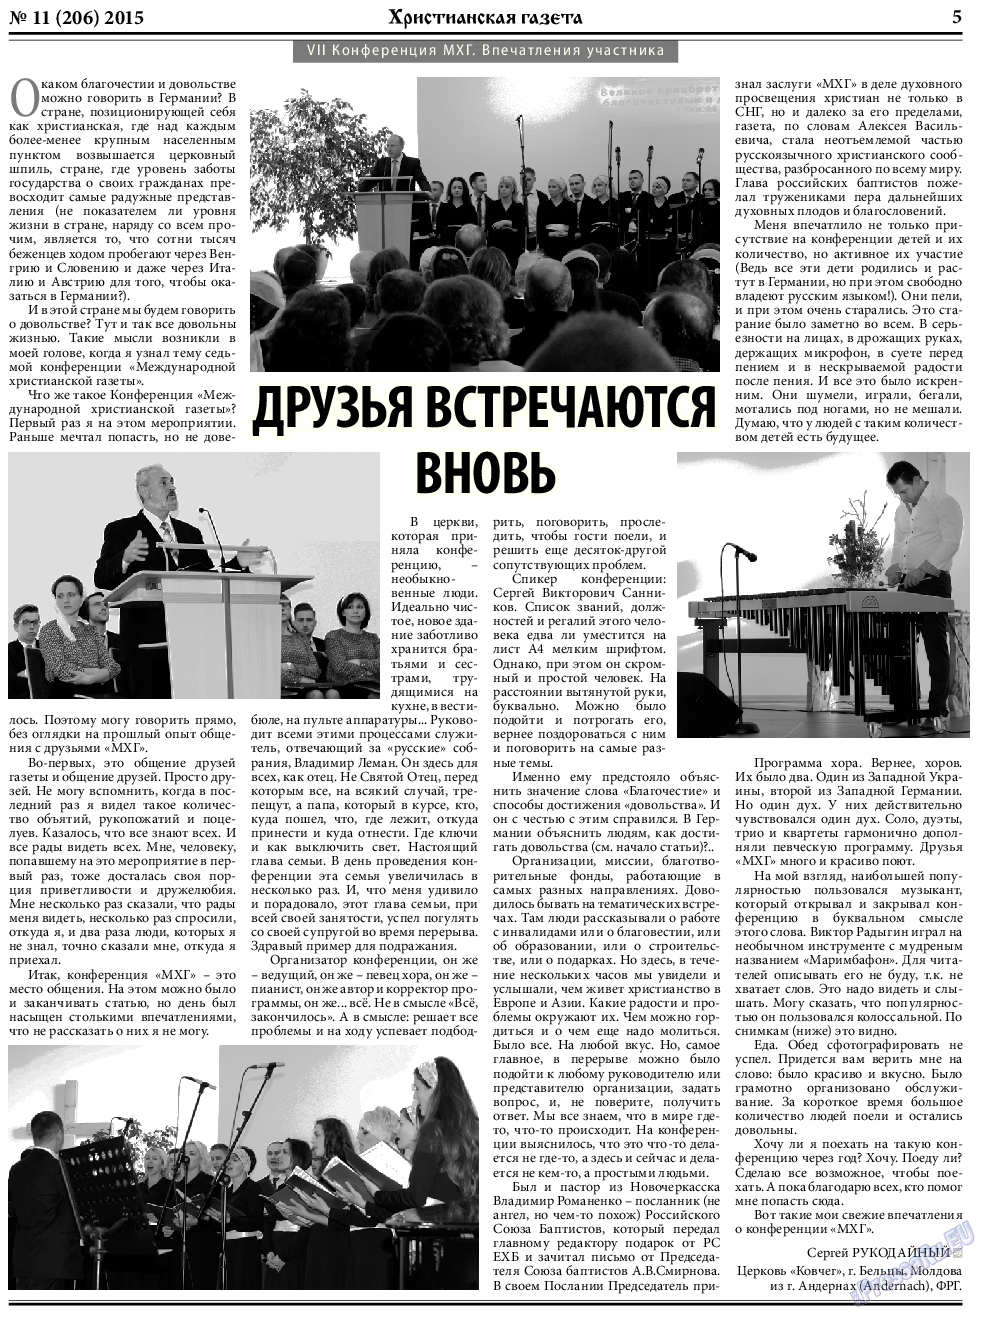 Христианская газета, газета. 2015 №11 стр.5